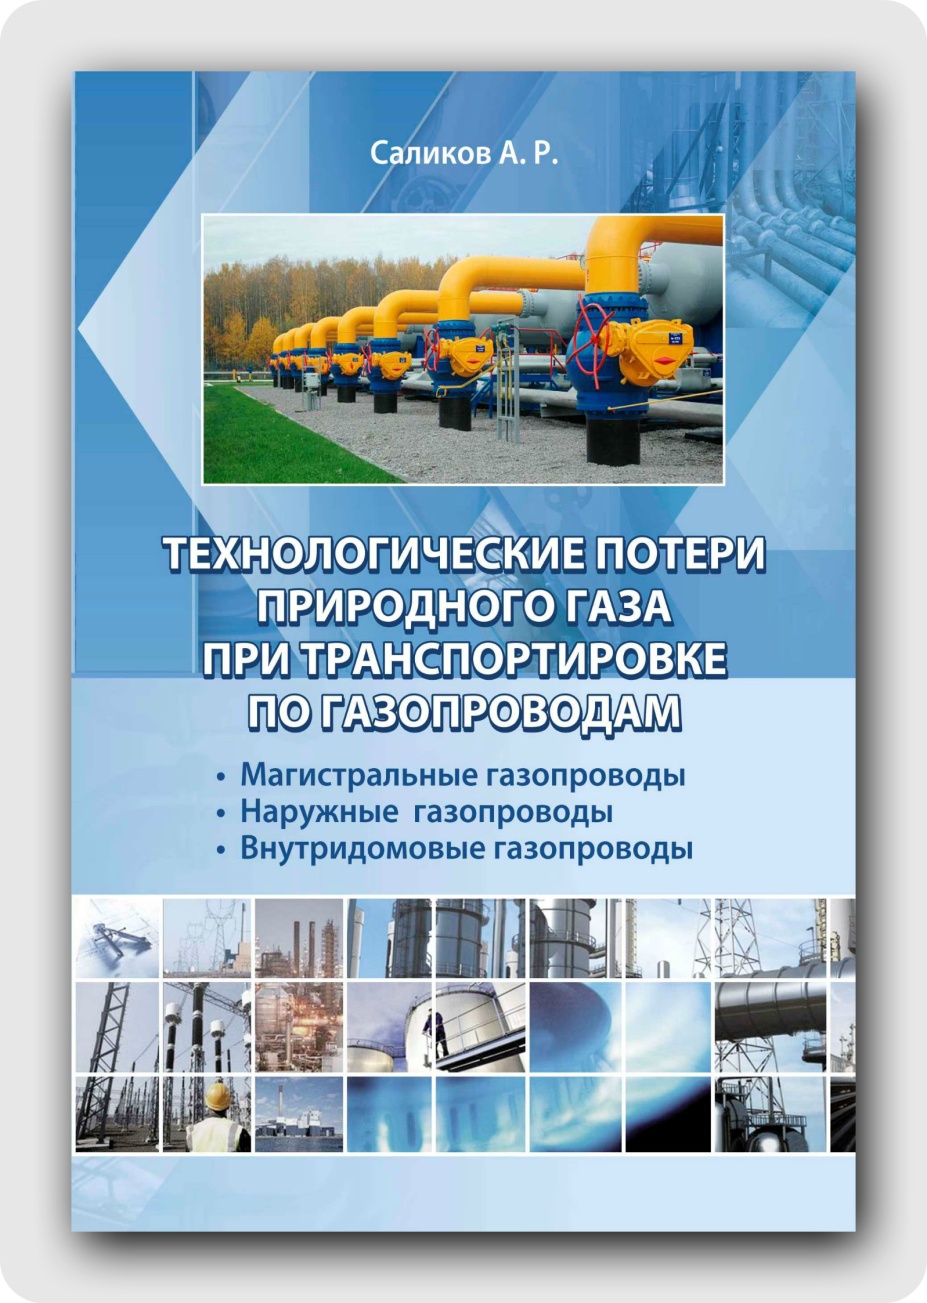 Издана первая книга из серии "Газоснабжение" - «Технологические потери природного газа при транспортировке по газопроводам: магистральные газопроводы, наружные газопроводы, внутридомовые газопроводы"